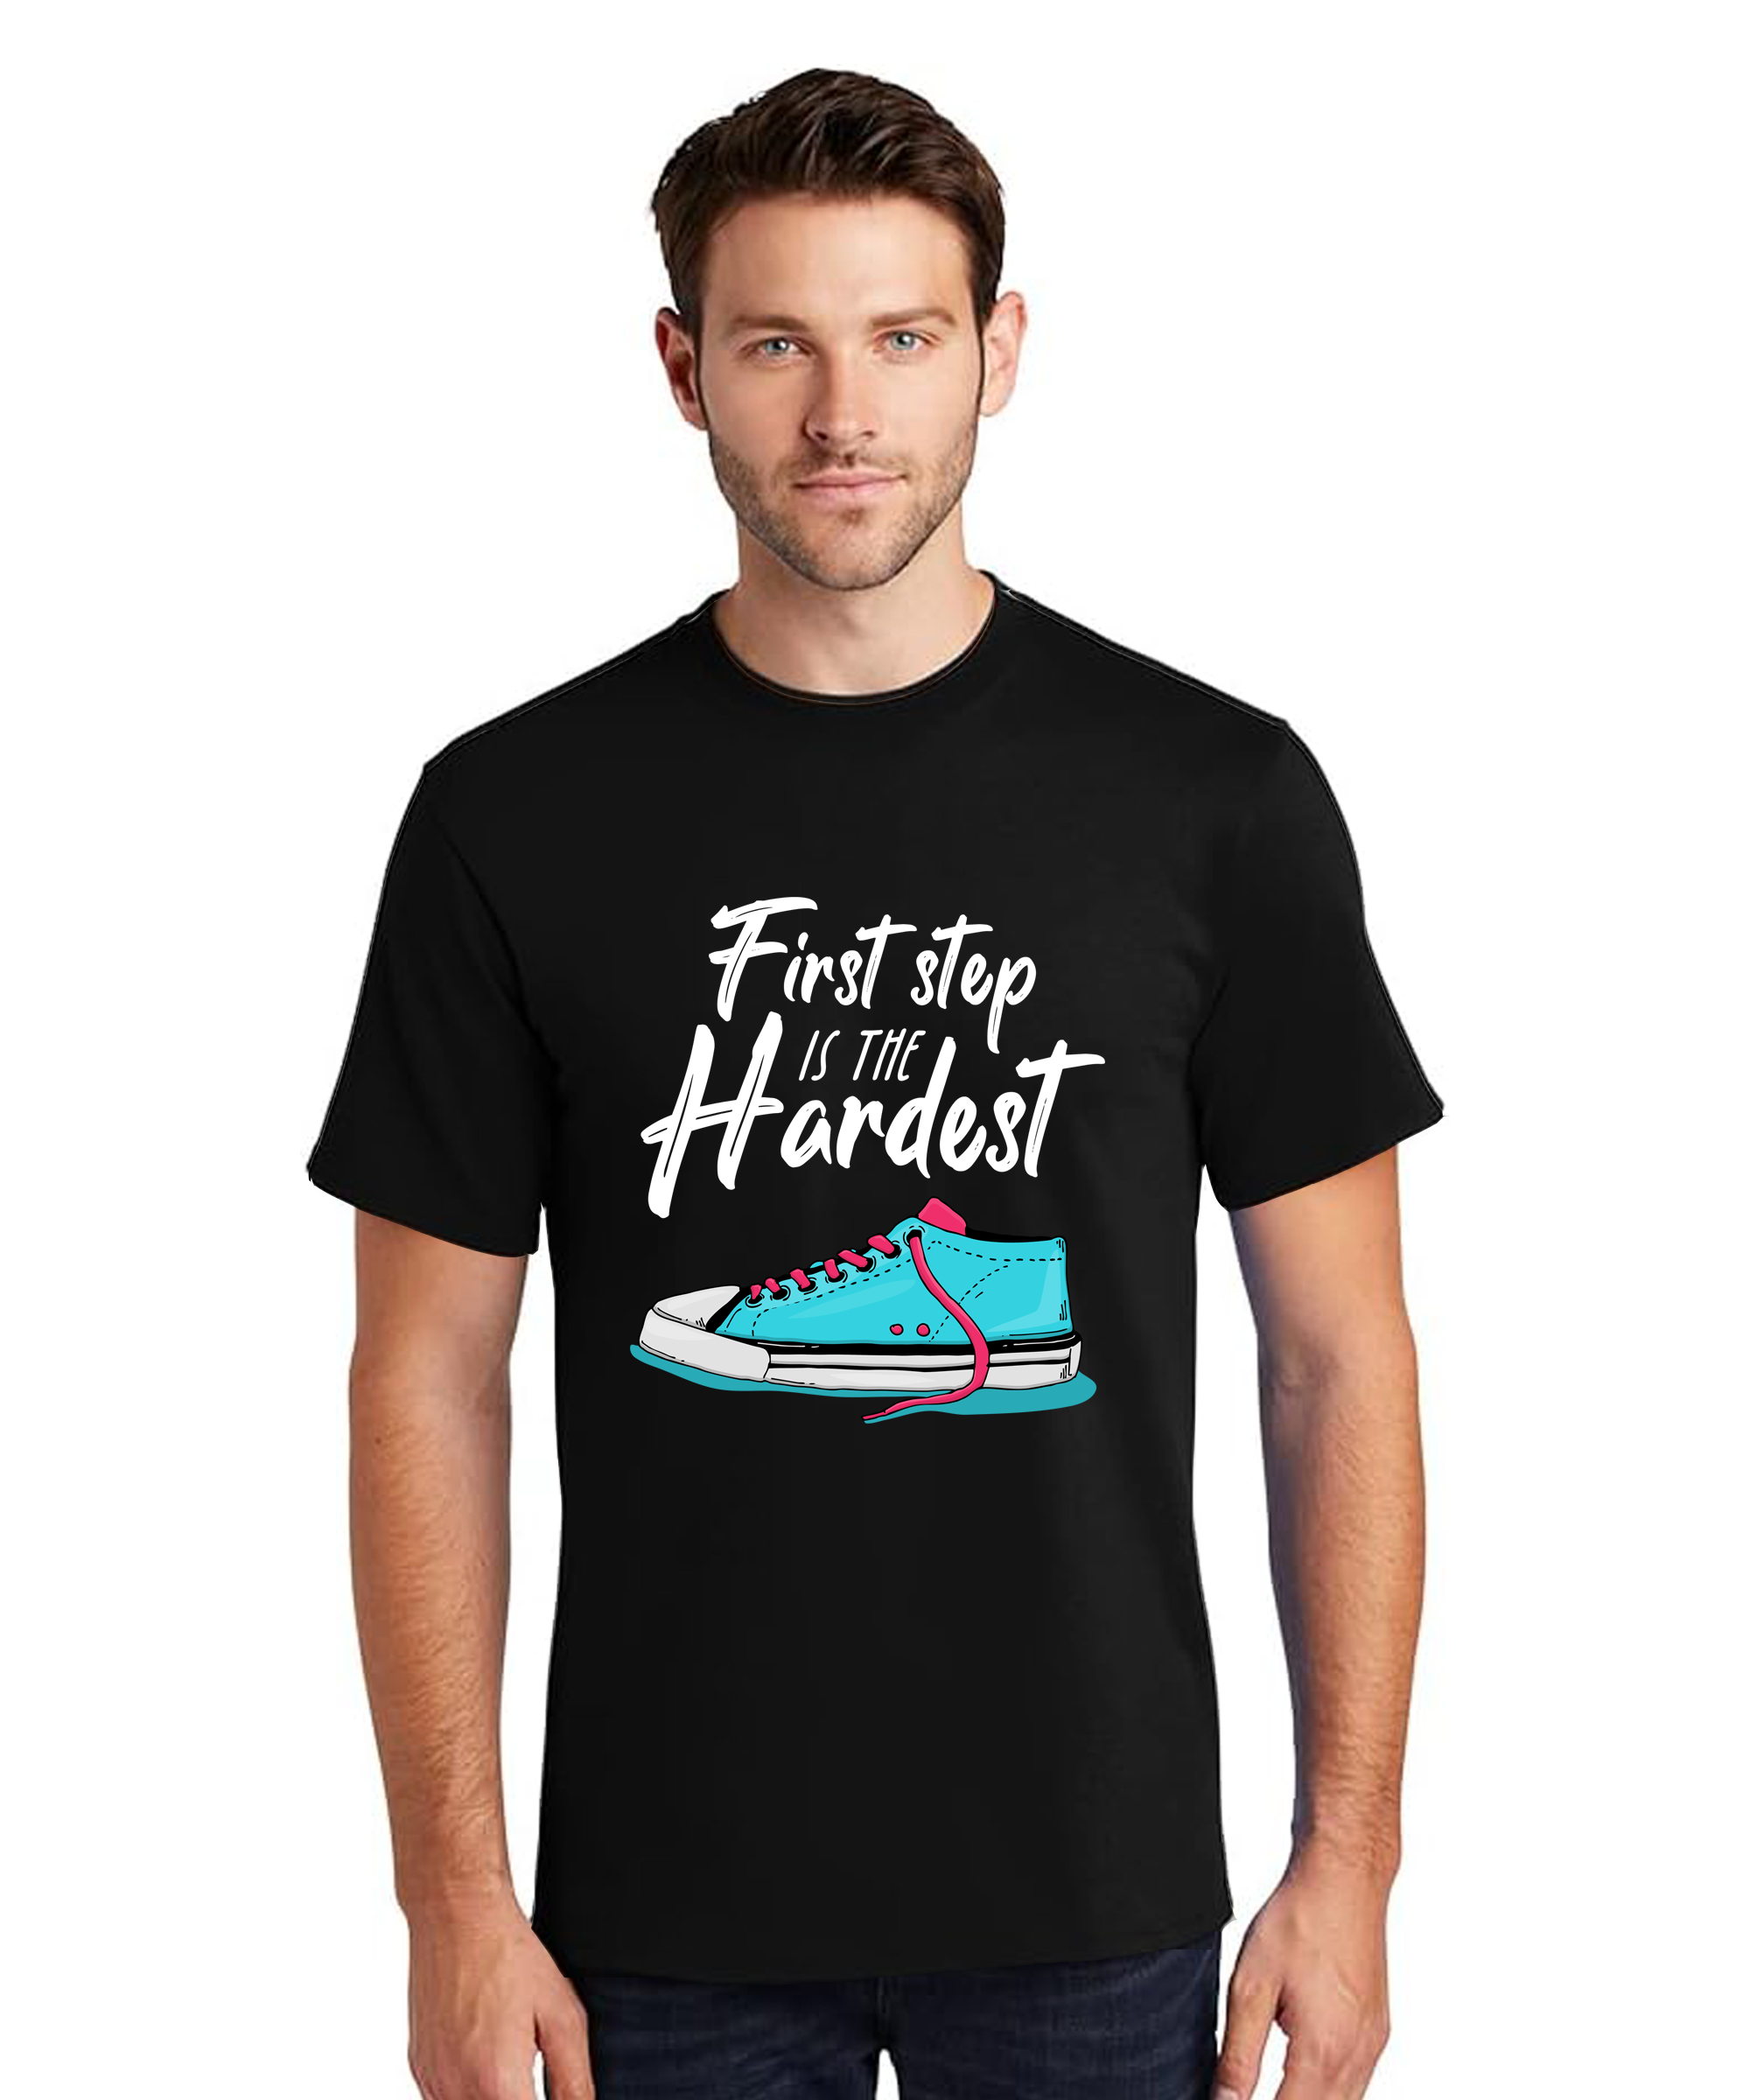 MEN Graphic Print Round Neck T-Shirt FIRST STEP IS HARDEST